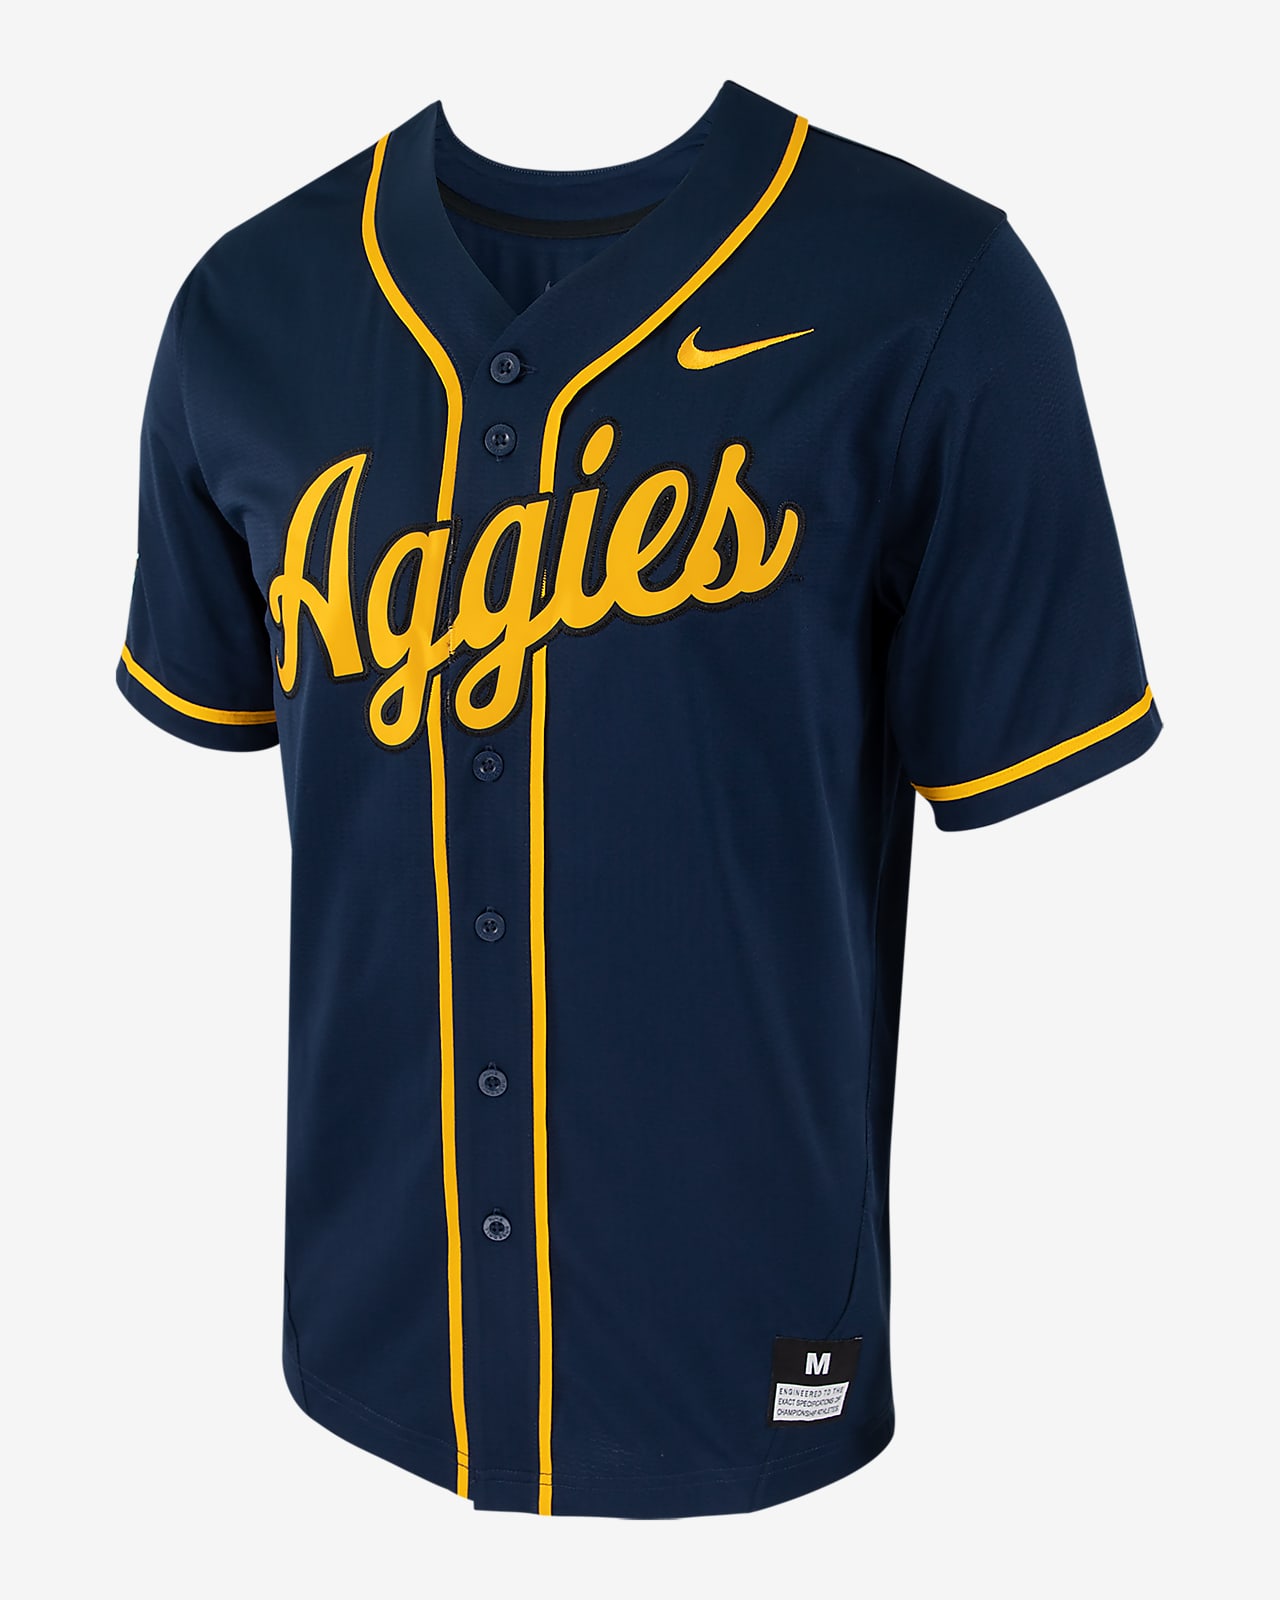 north carolina baseball uniforms